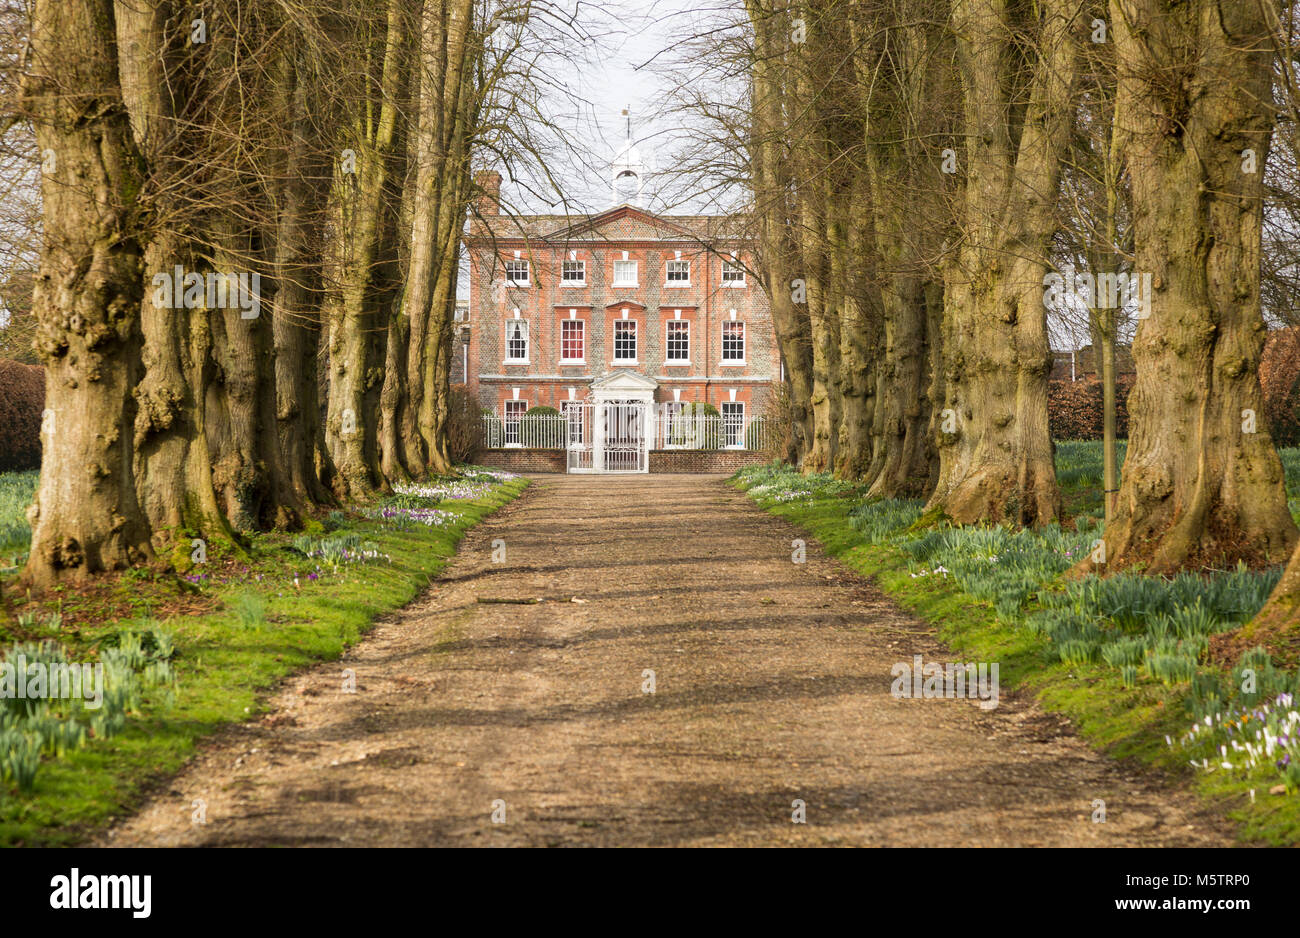 Ligne allée Avenue arbres menant à Oare maison construite 1740, OARE, Wilcot, Wiltshire, England, UK Banque D'Images